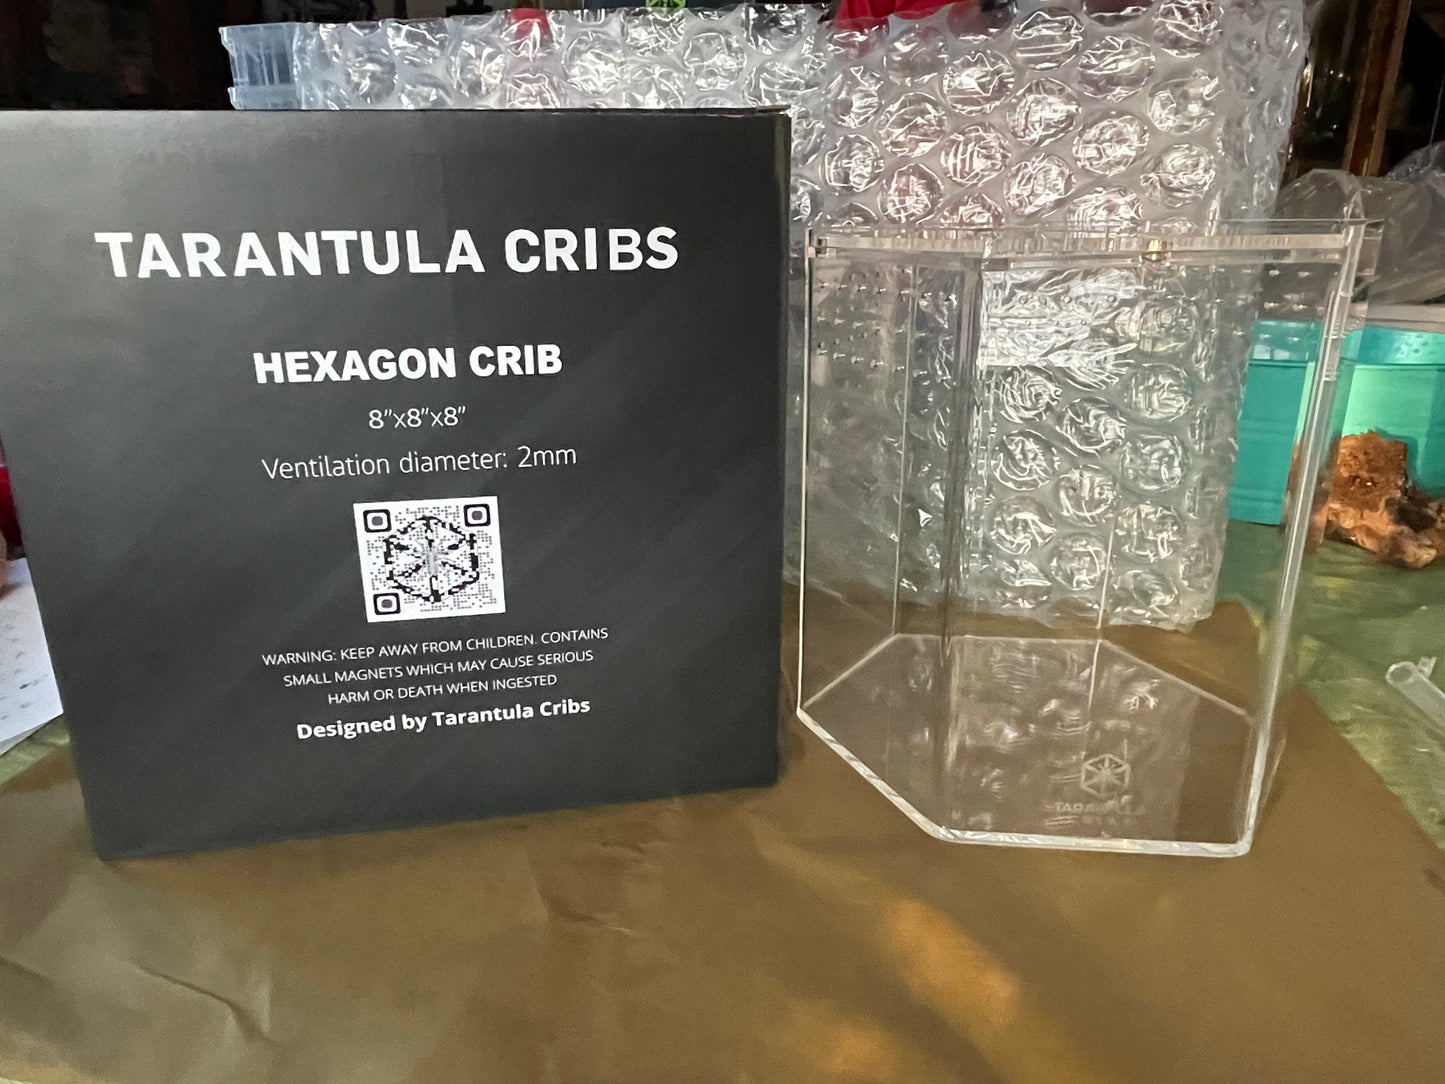 Tarantula Cribs’ Hexagon Crib